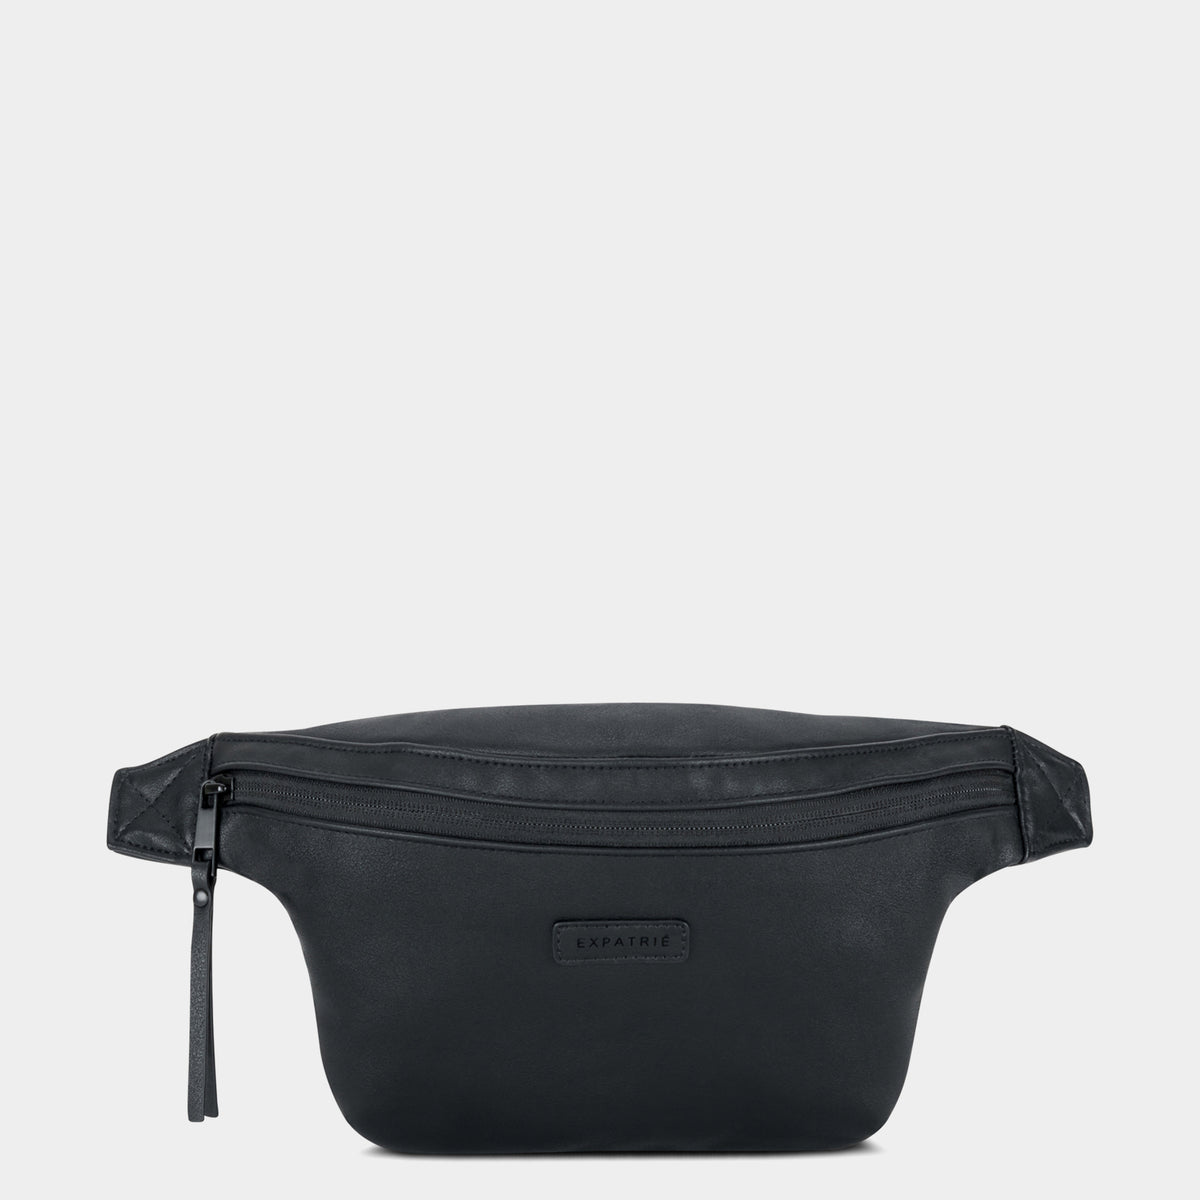 Expatrié leather bum bag Lucie for women